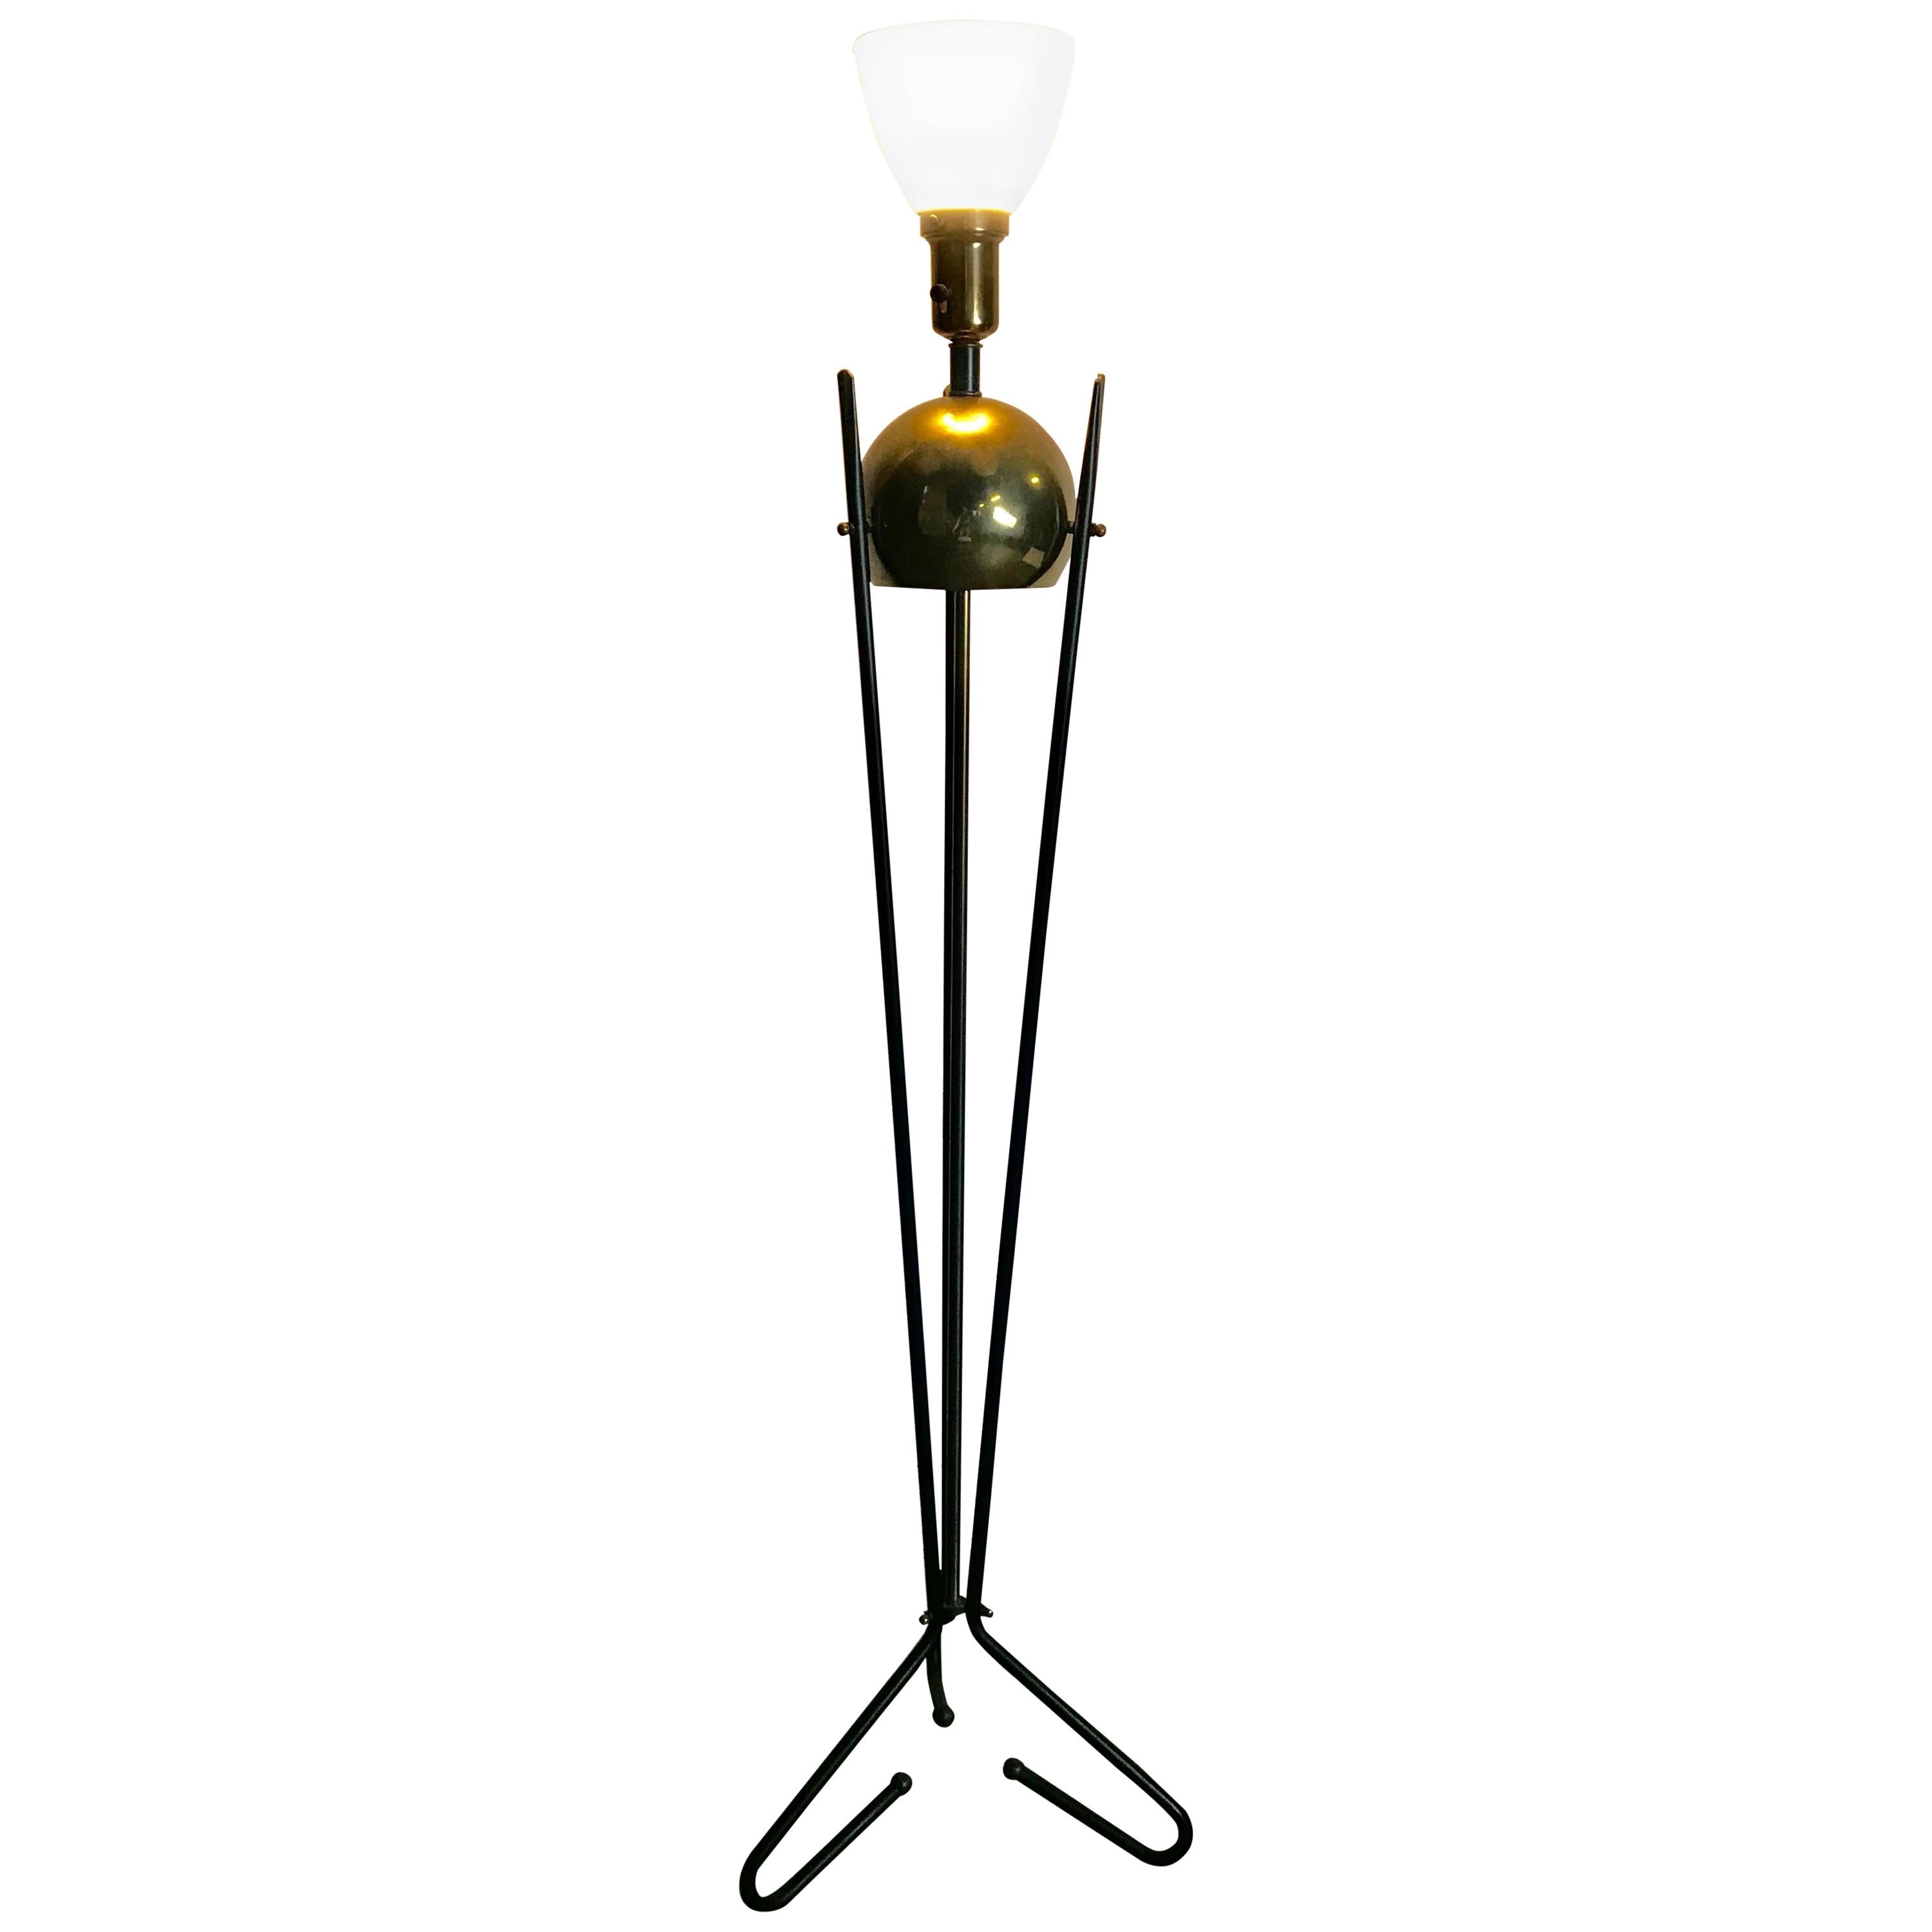 Mid-Century Modern Brass and Iron Floor Lamp, Gerald Thurston for Lightolier